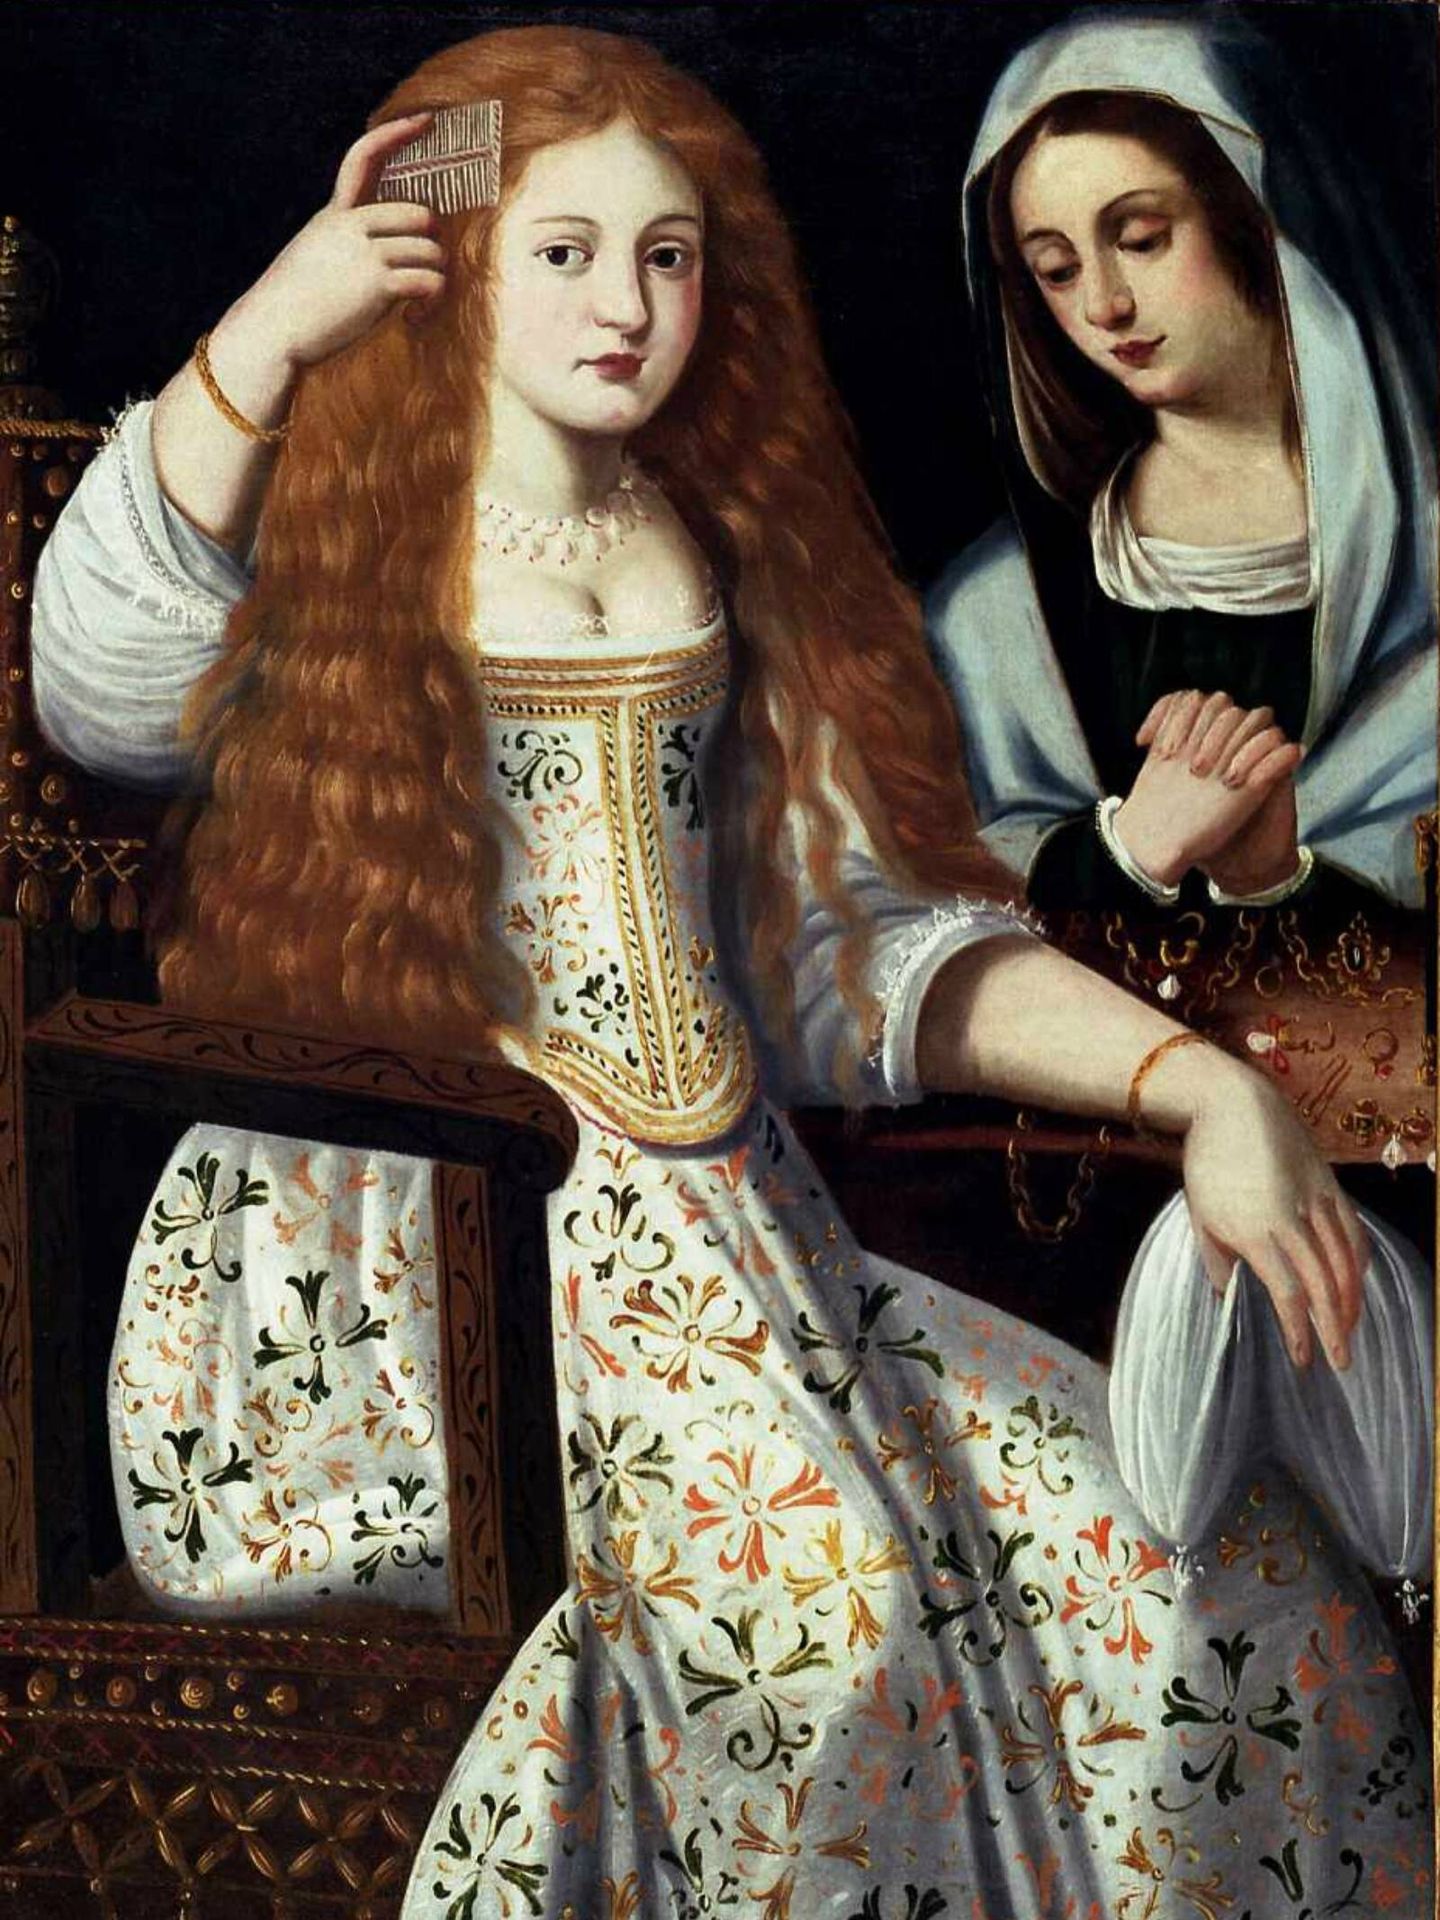 María Calderón, peinándose en el cuadro anónimo 'Alegoría de la vanidad', siglo XVII. (Monasterio de las Descalzas Reales/Patrimonio Nacional)